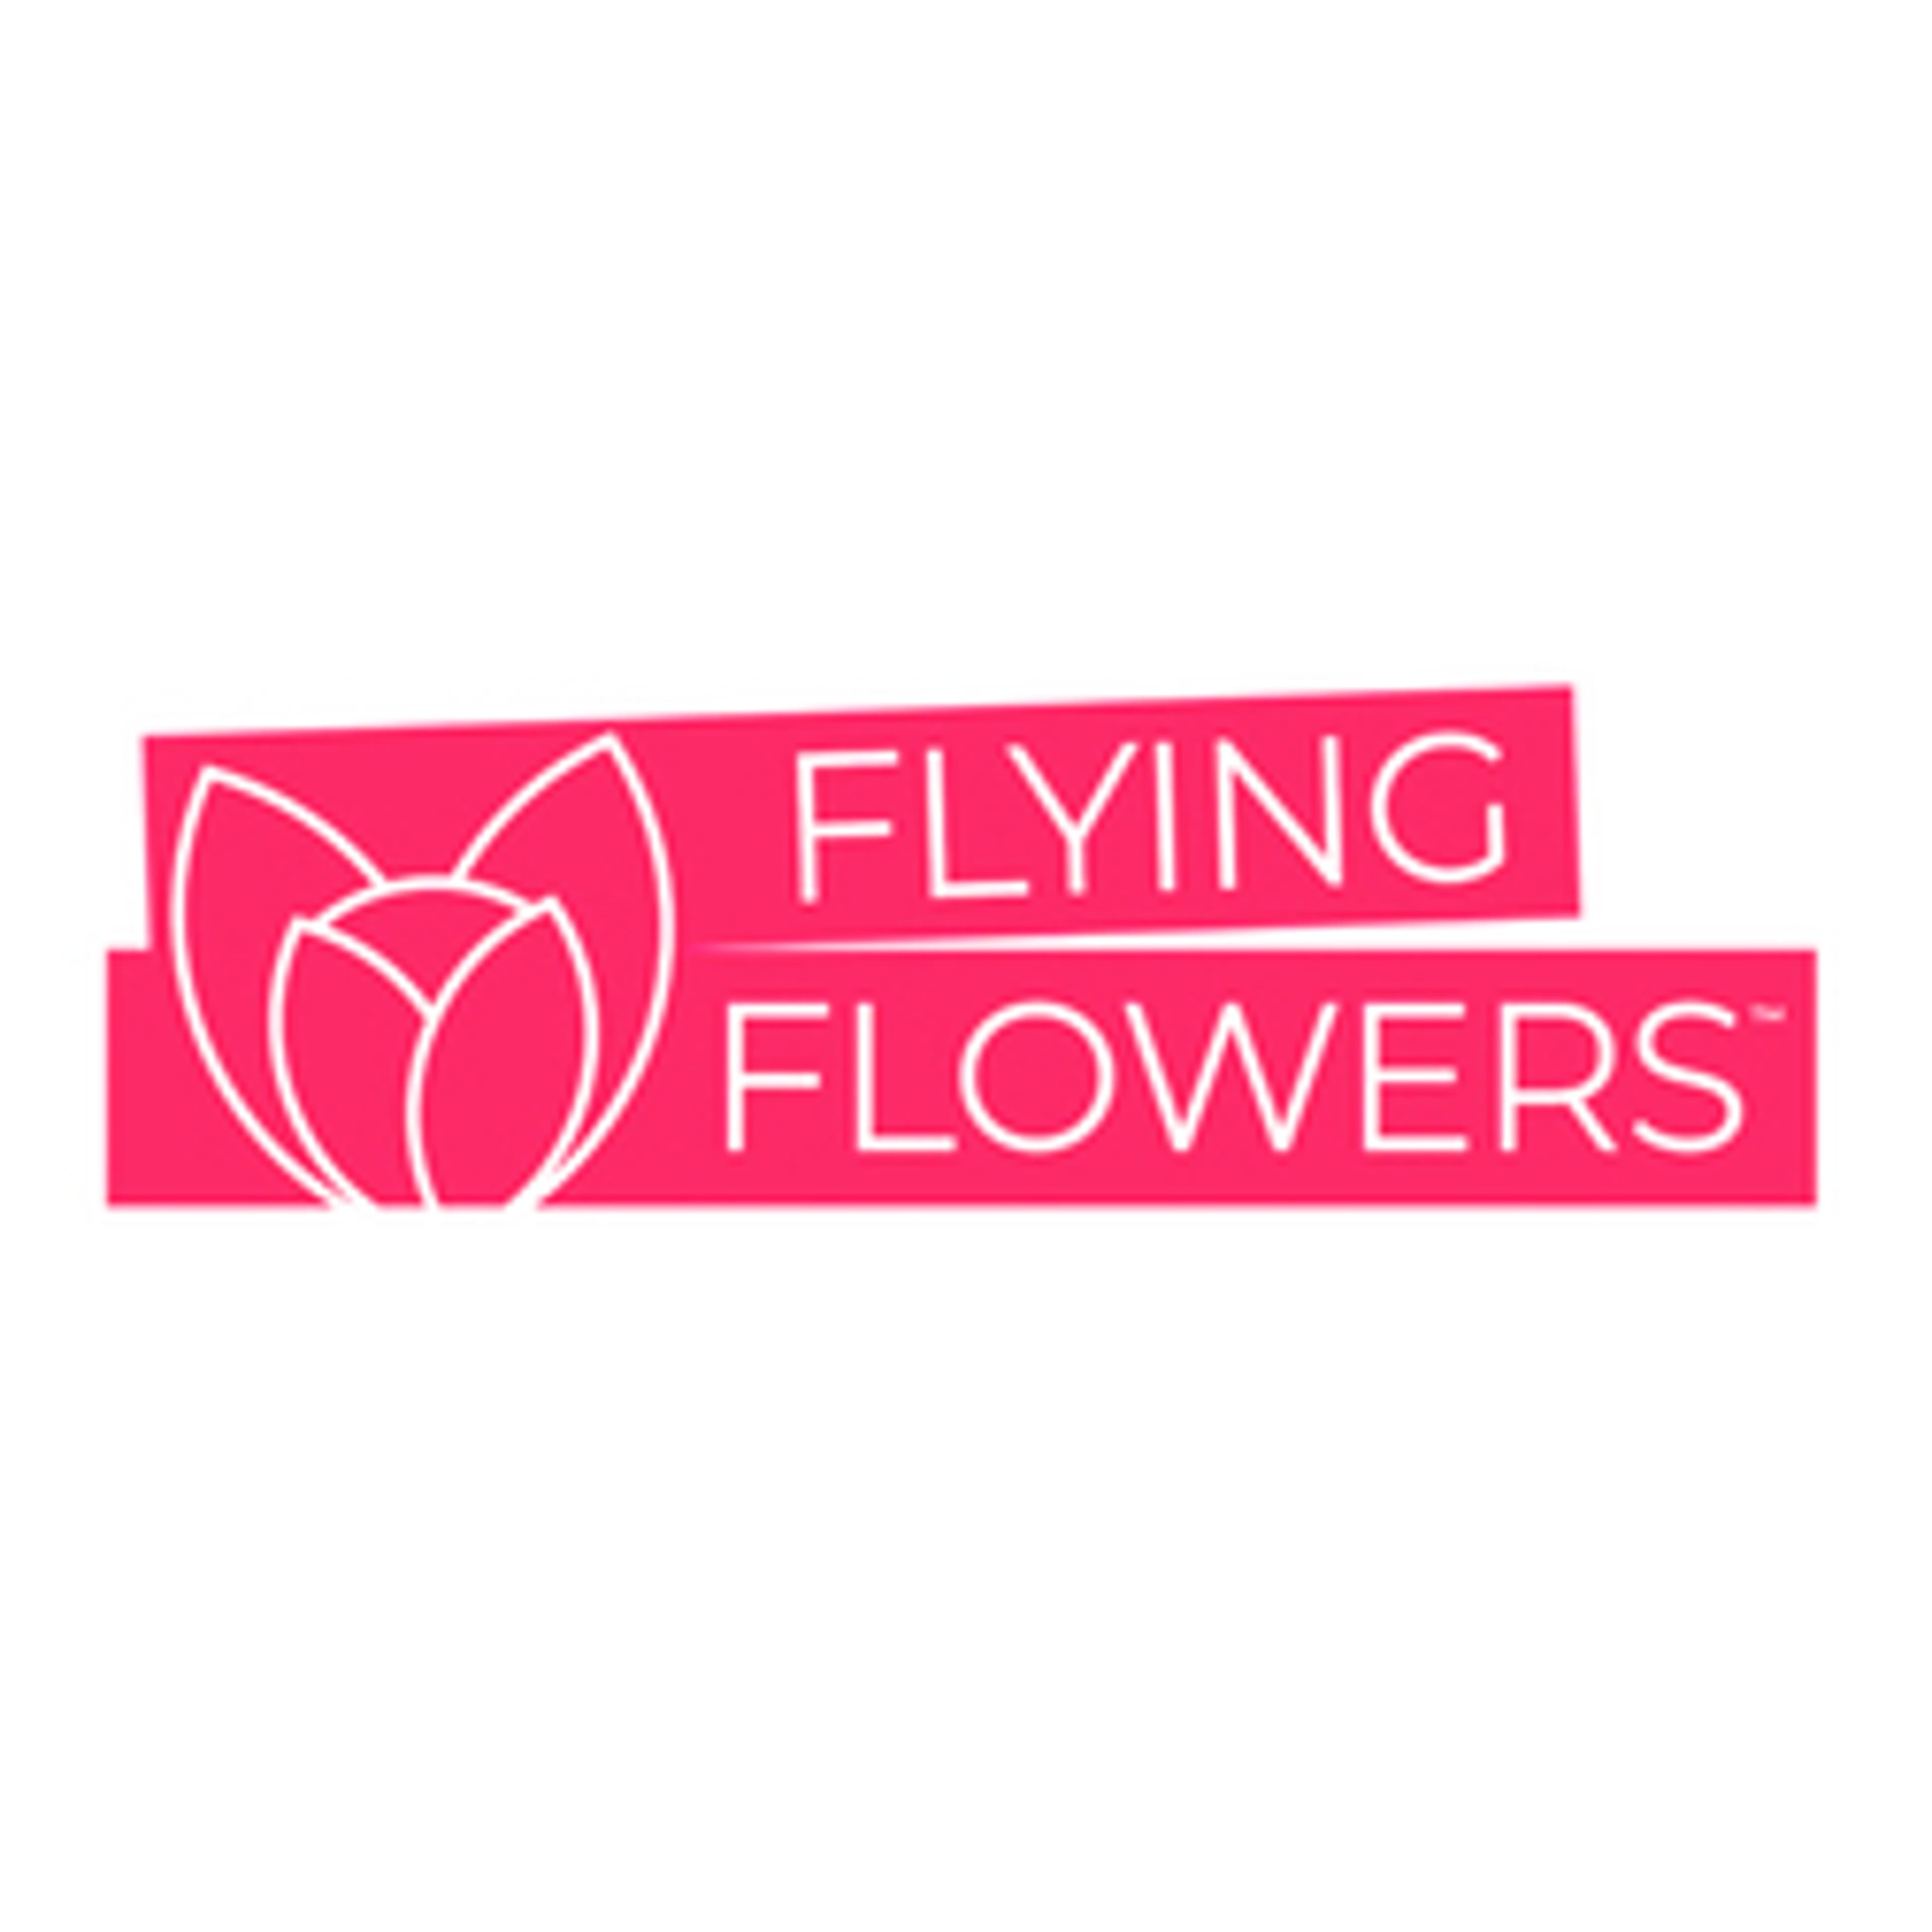  Flying Flowers 